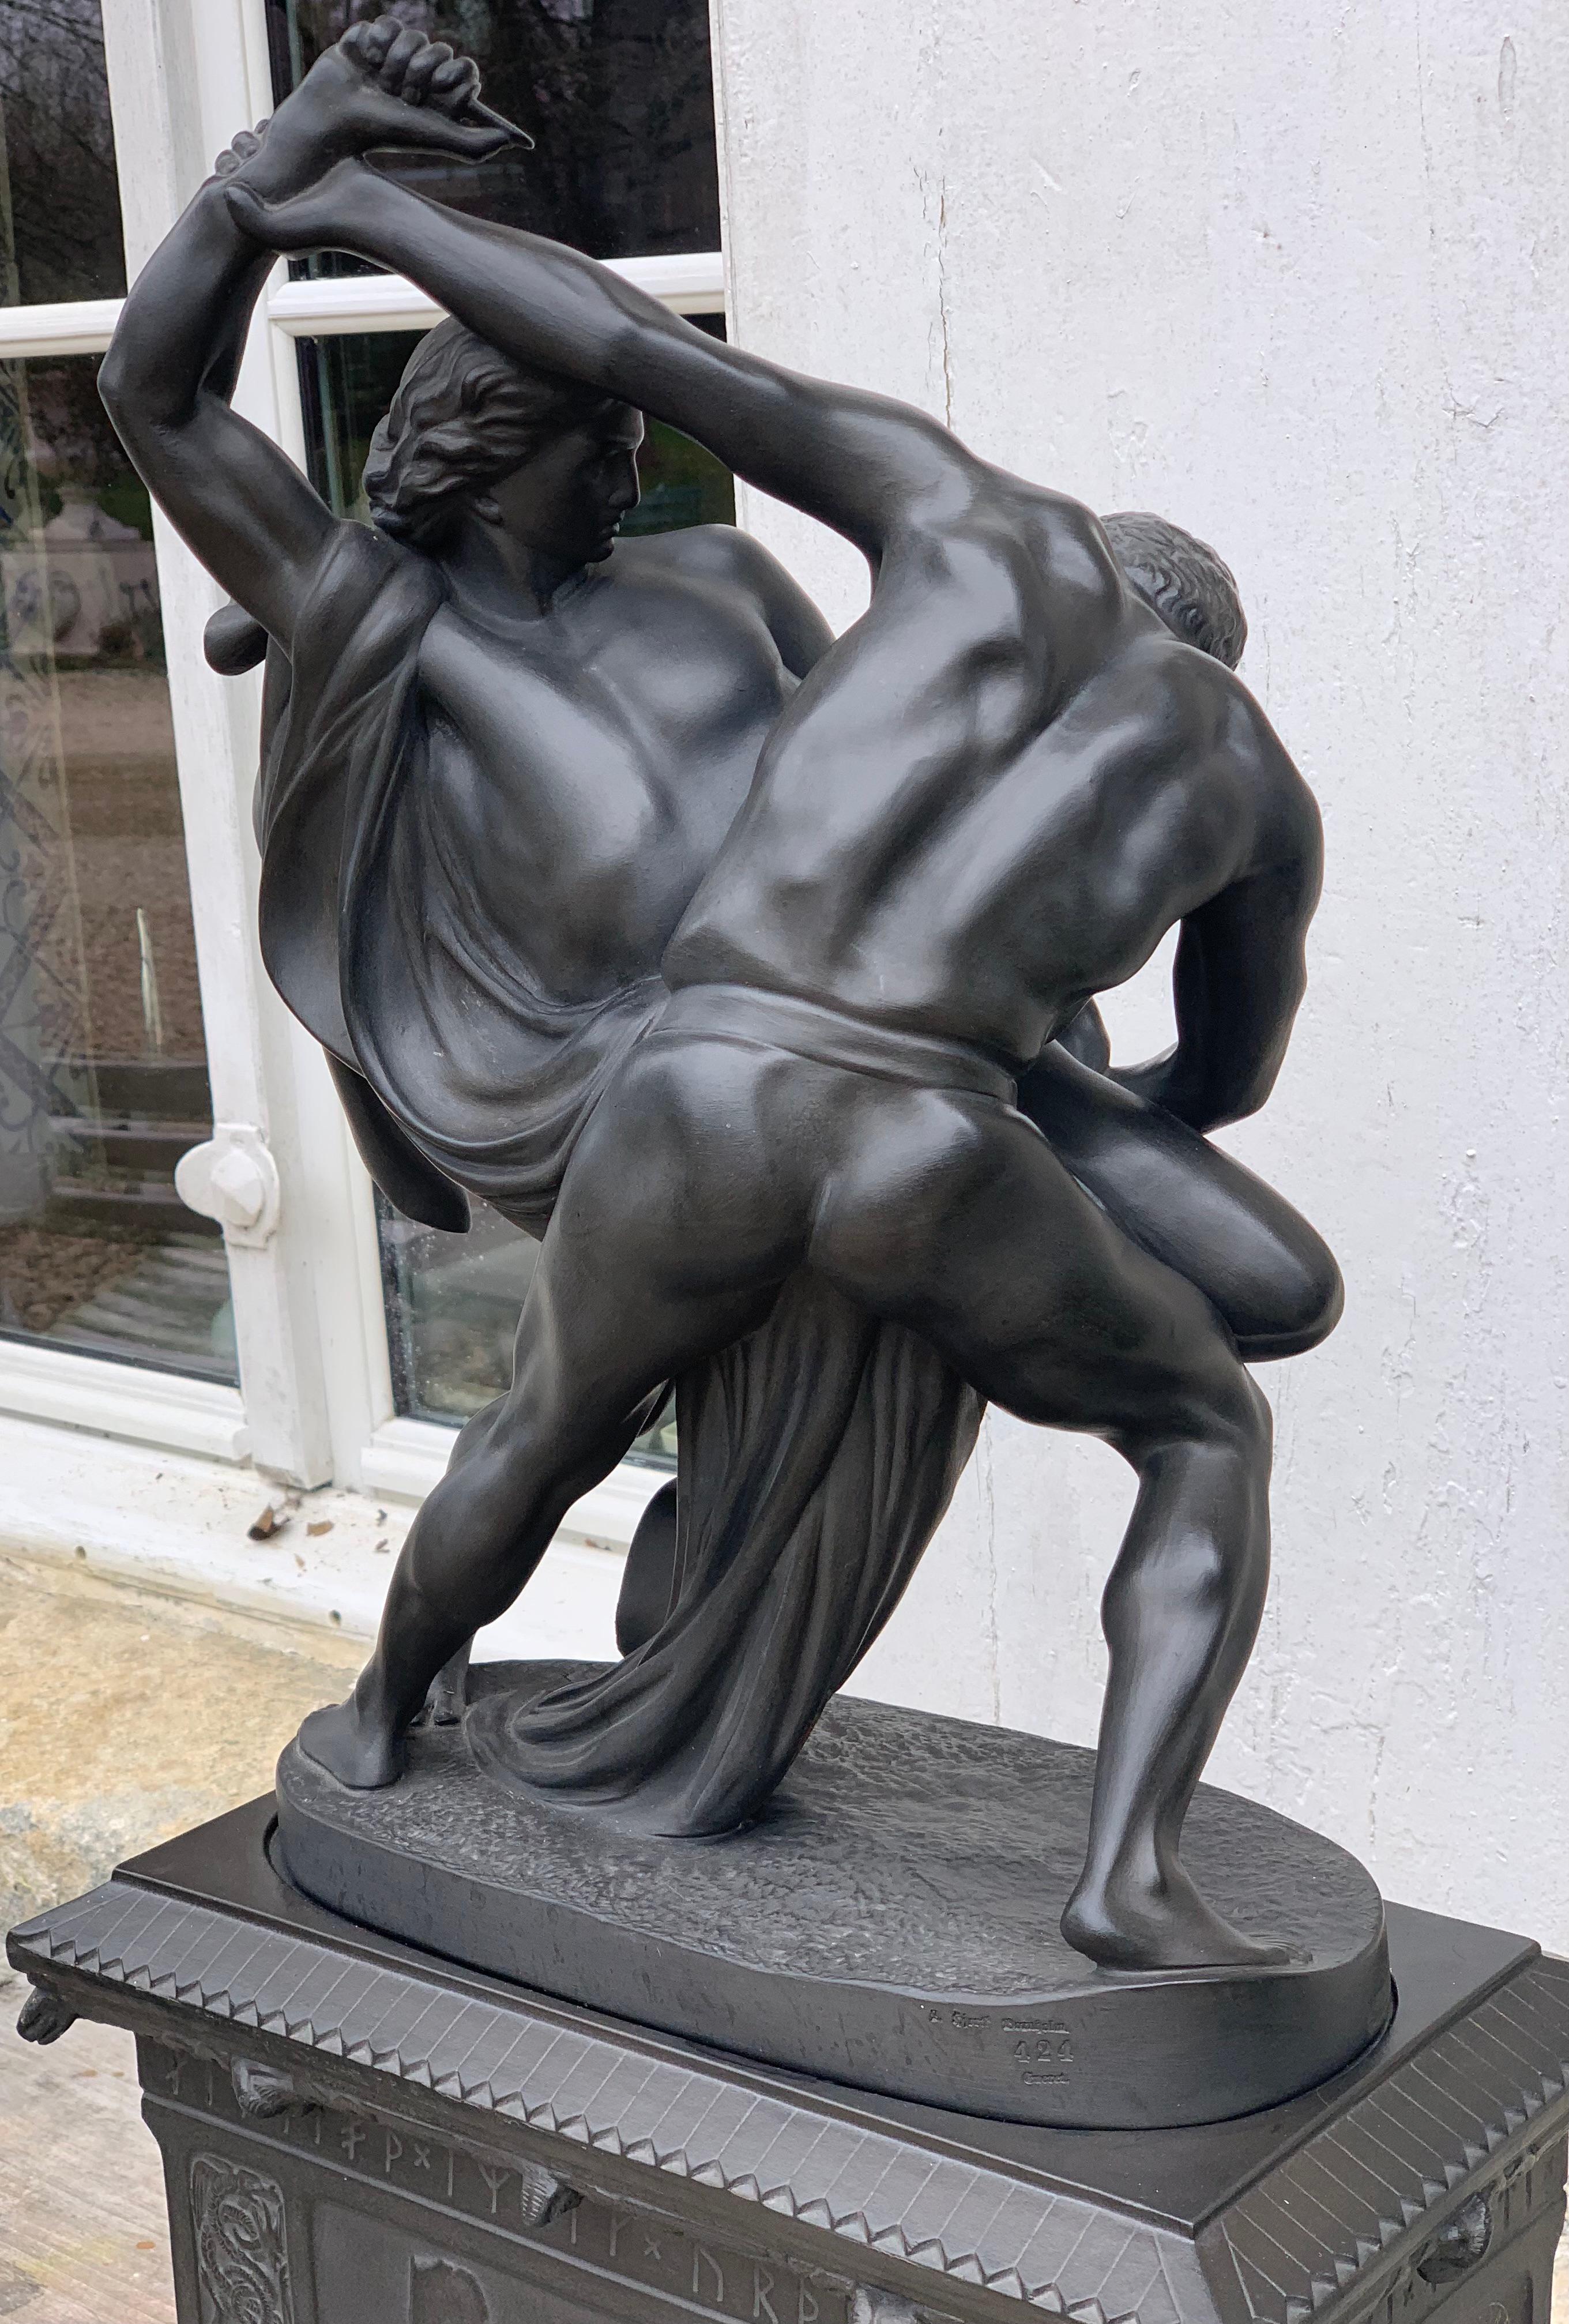 Seltene und imposante Verkleinerung der berühmten Statue von JP Molin, die 1867 vor dem Nationalmuseum in Stockholm eingeweiht wurde.
Diese Version aus schwarz emailliertem Steingut wurde von der Manufaktur Hjorth auf der Insel Bornholm hergestellt.